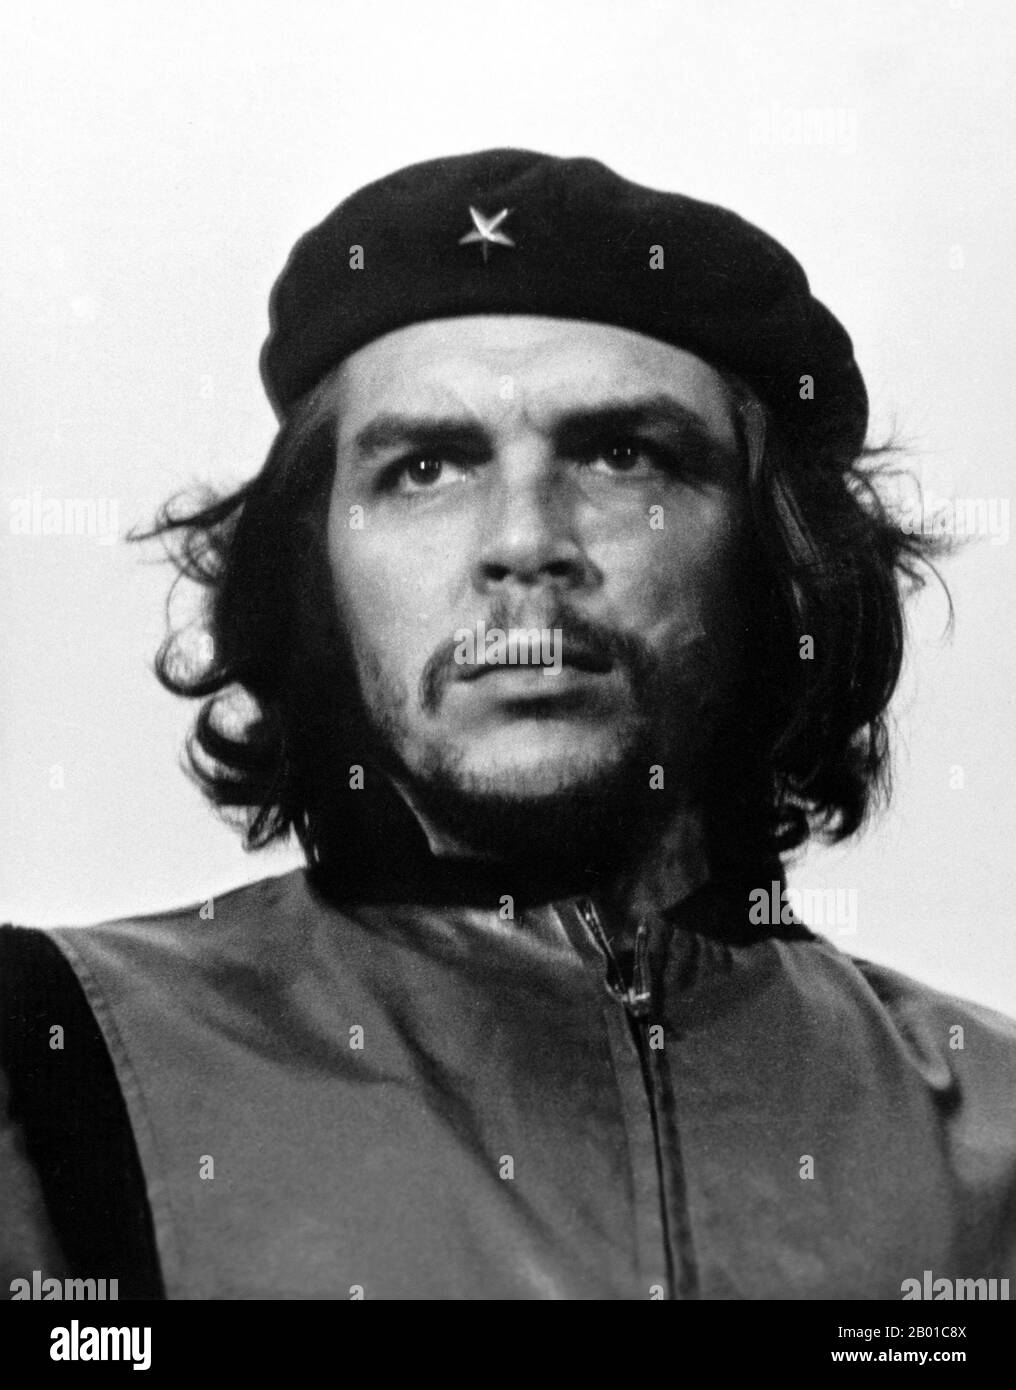 Cuba/Argentina: Ernesto 'Che' Guevara (14 de junio de 1928 - 9 de octubre de 1967), conocido comúnmente como El Che o simplemente Che, marxista argentino revolucionario, médico, autor, intelectual, líder guerrillero, diplomático y teórico militar. Foto de Alberto Korda (14 de septiembre de 1928 - 25 de mayo de 2001, dominio público), 5 de marzo de 1960. Mientras vivía en la Ciudad de México, Guevara conoció a Raúl y Fidel Castro, se unió a su Movimiento del 26th de Julio, y navegó a Cuba a bordo del yate Granma, con la intención de derrocar al dictador cubano Fulgencio Batista, respaldado por Estados Unidos. Guevara pronto se hizo prominente entre los insurgentes. Foto de stock